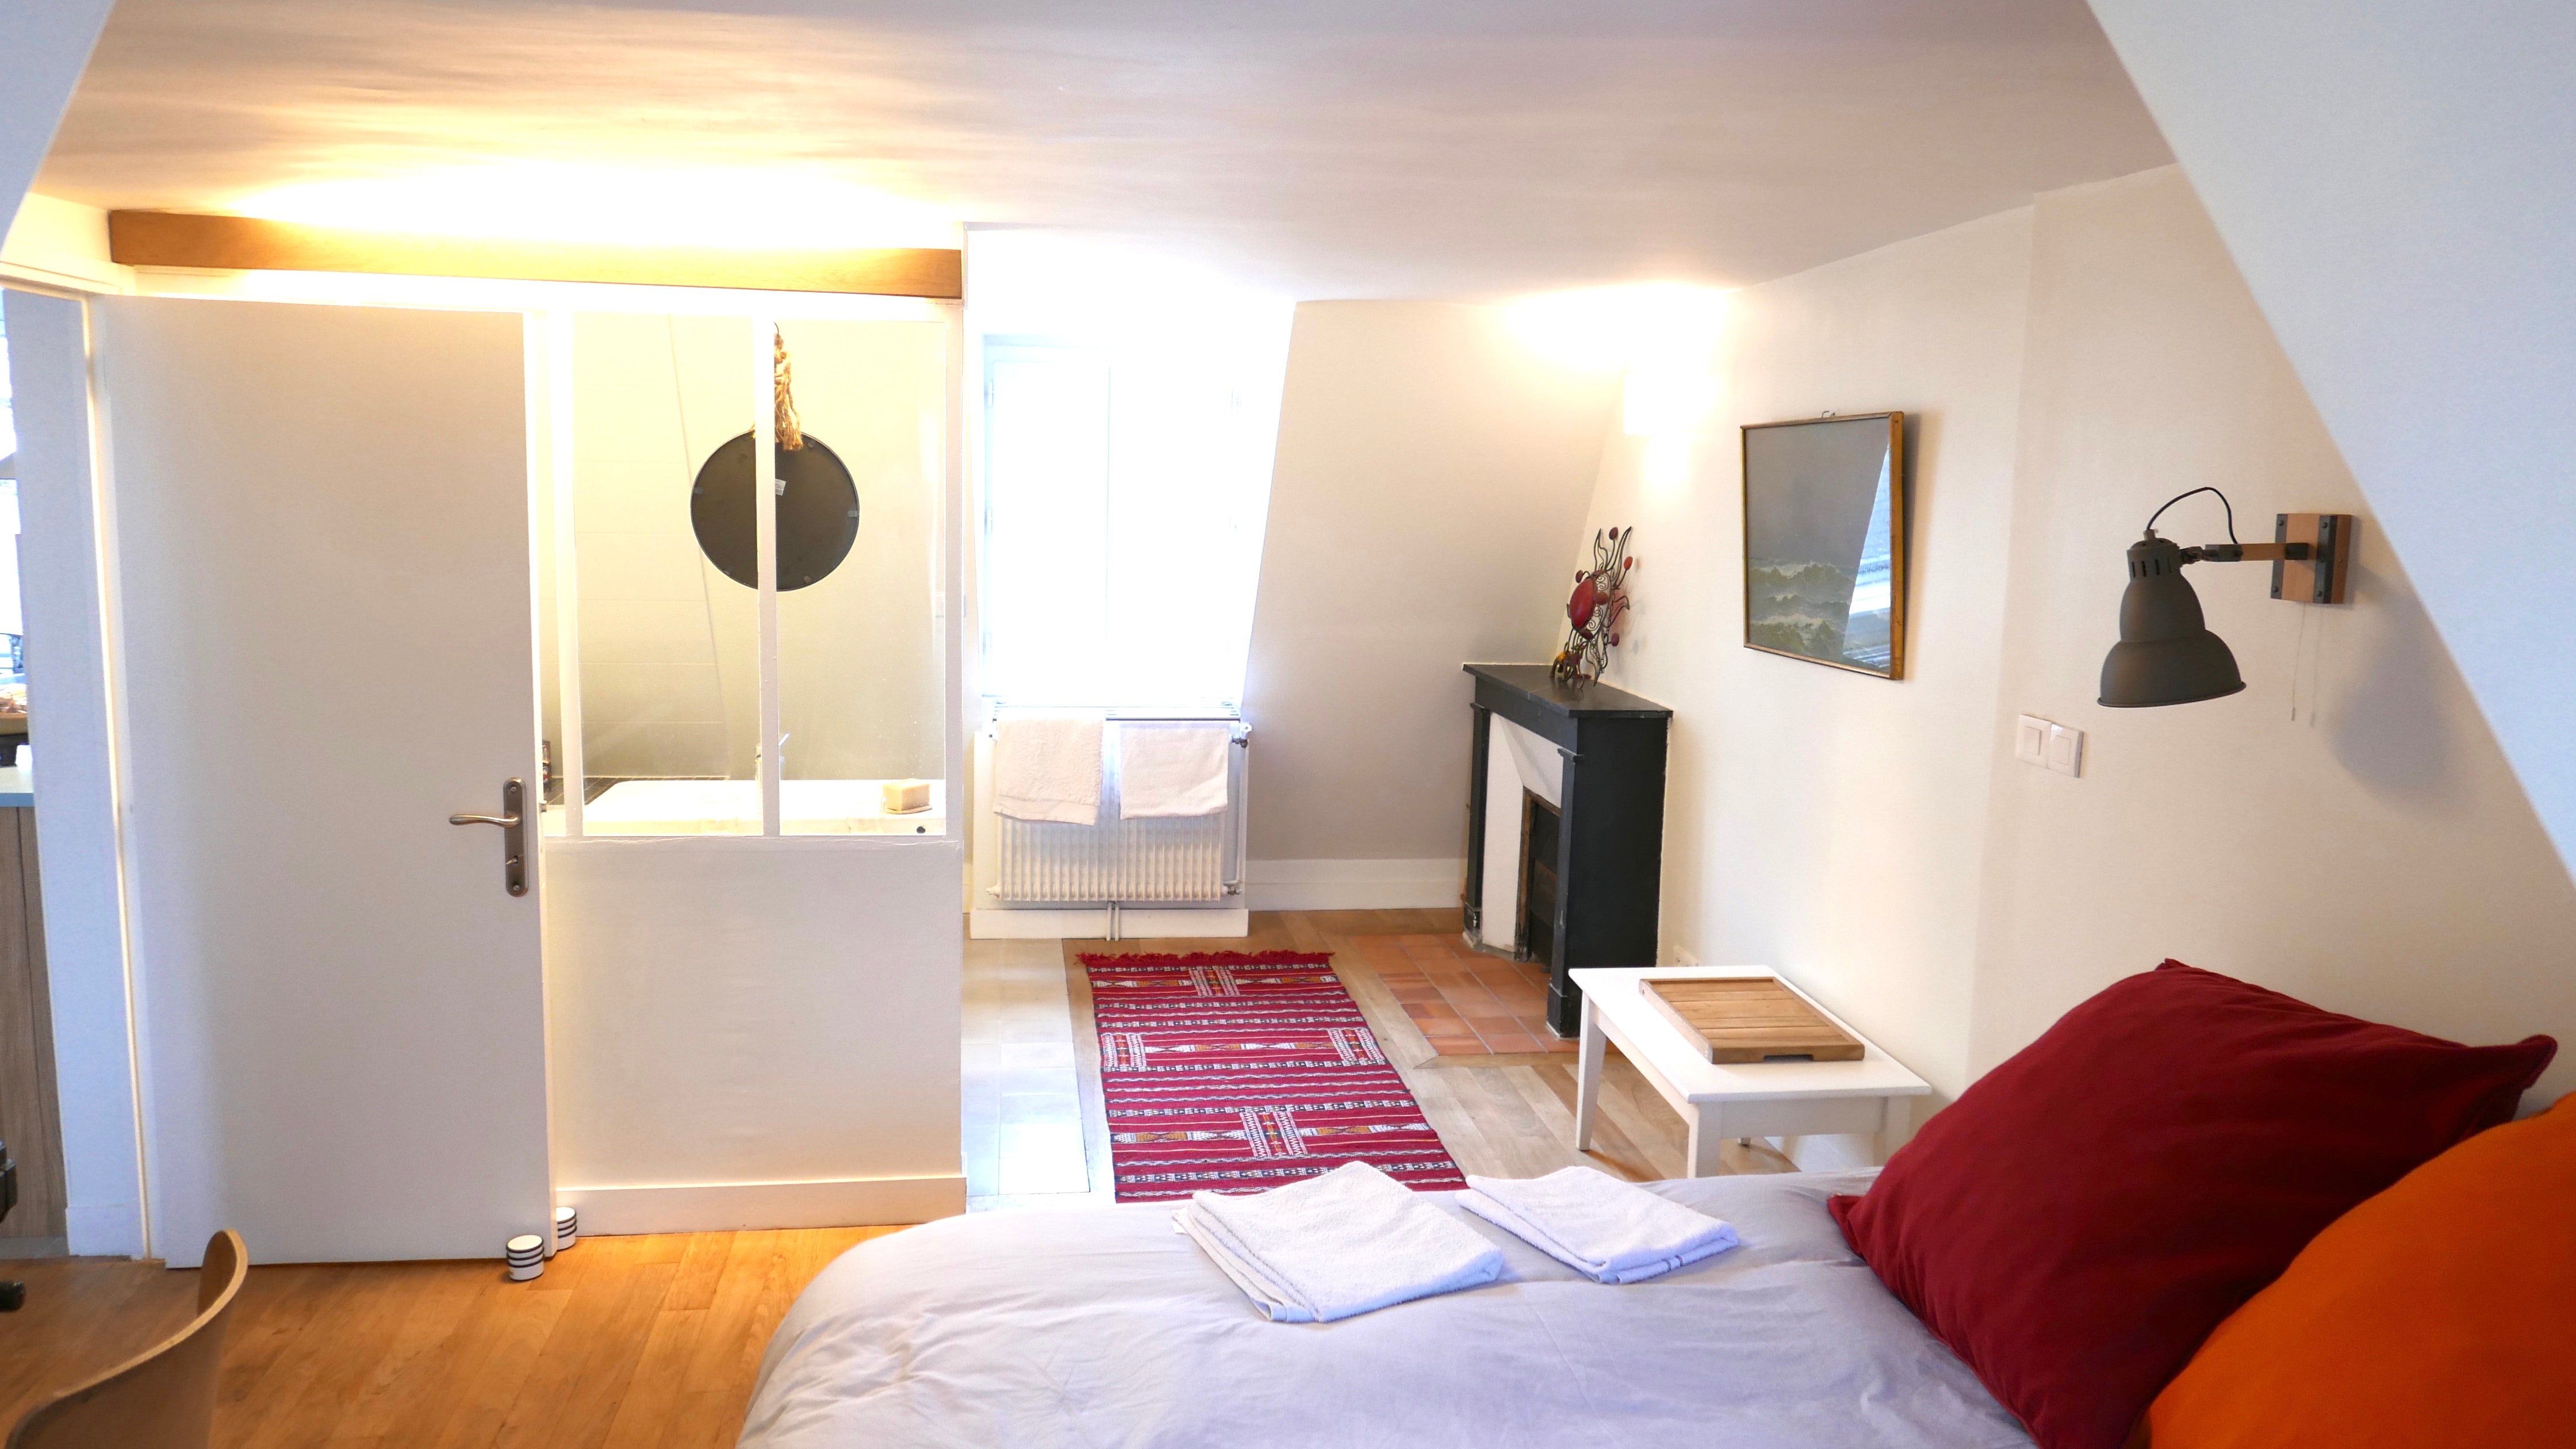 <p>Ultra-confortable, cet appartement de deux pièces se trouve sur les toits de Paris. Plutôt chouette, non ? Il comprend une chambre avec salle de bain, et un séjour avec une cuisine à l’américaine. Le logement est lumineux et calme, et permet de rejoindre de superbes lieux en quelques minutes : le Marais, le Faubourg Saint-Denis et même le Canal Saint-Martin.</p> <div class="callout"><p><a href="https://airbnb.pvxt.net/B0aVe0" title="Réservez ici">Réservez ici</a></p> </div><p>Inscrivez-vous à l’une de nos newsletters pour recevoir toute l’actualité mode, culture et les recommandations shopping de GQ directement dans votre boite mail.</p><a href="https://newsletter.gqmagazine.fr/?sourceCode=msnsend">S’inscrire ici</a>